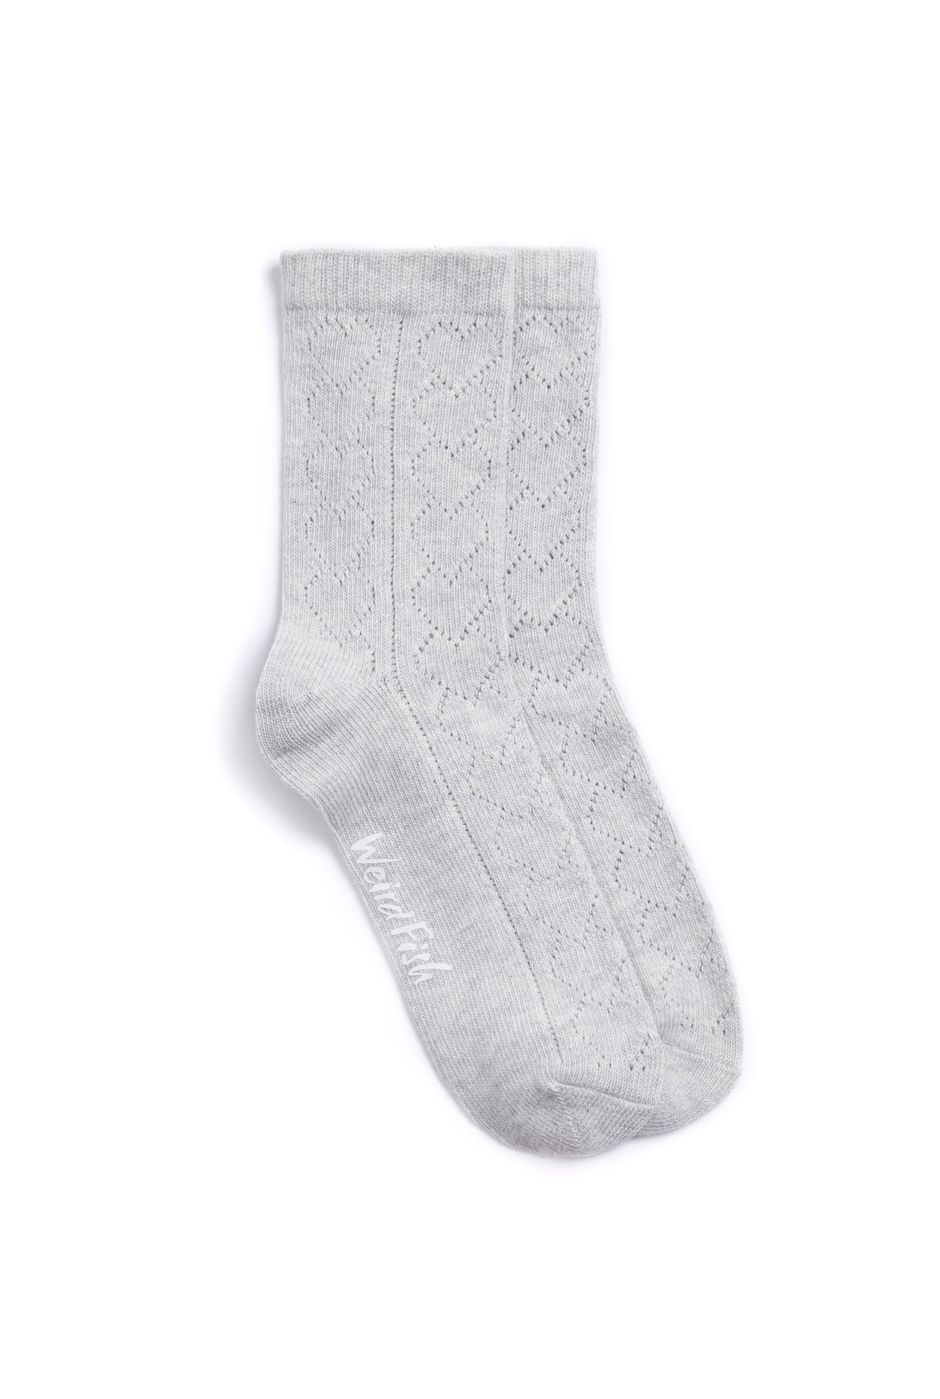 Gail Pellerine Ankle Socks Pearl Grey